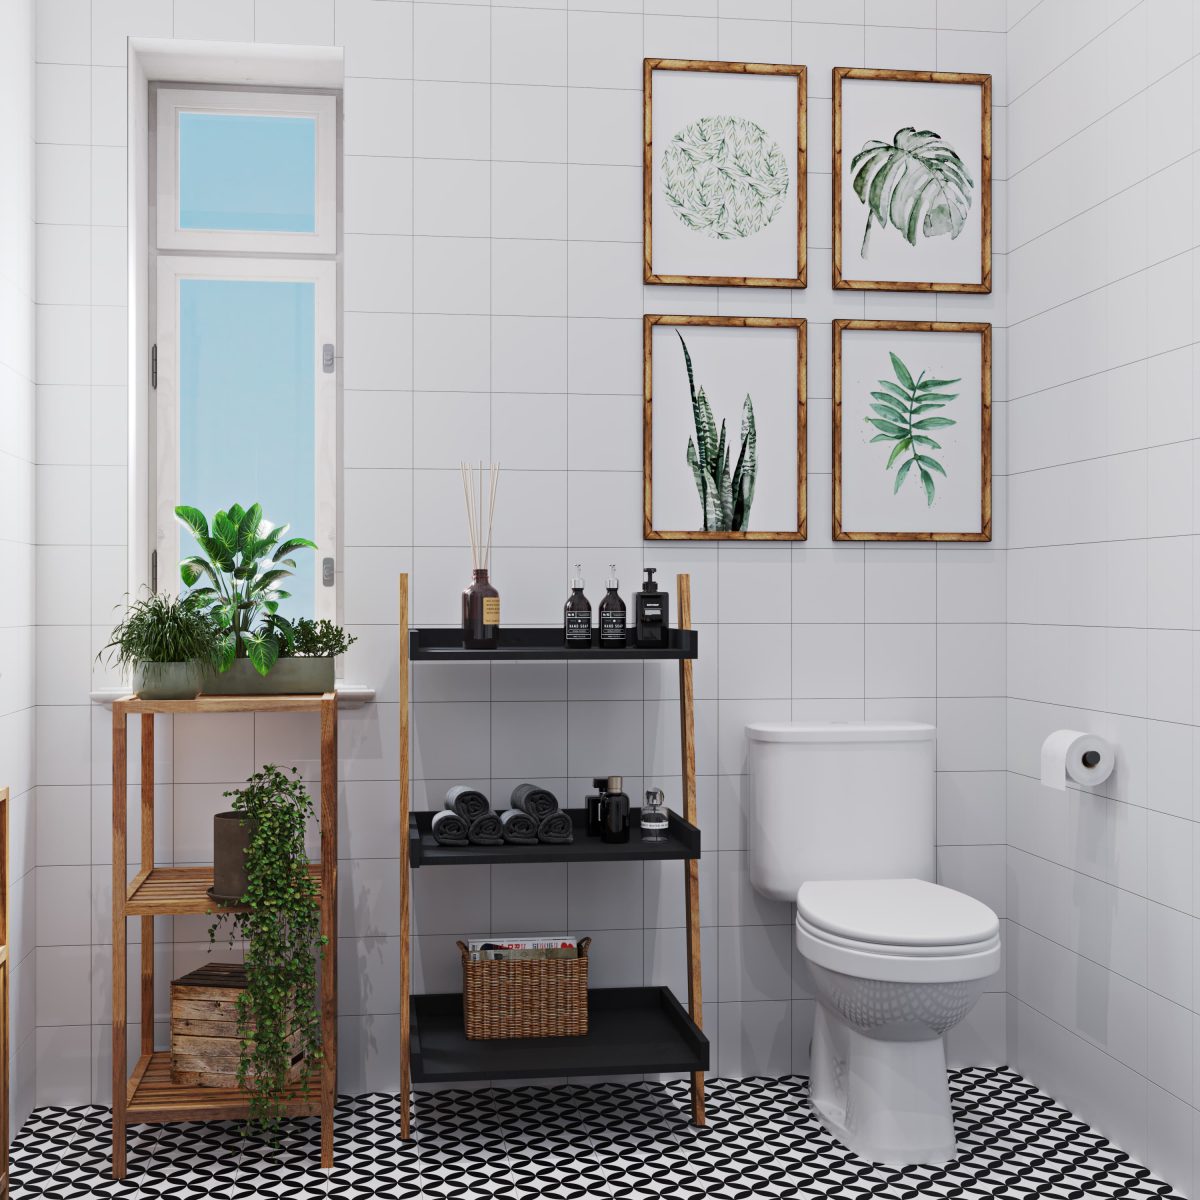 SIKO kombi WC, kúpeľňový regál s čiernymi policami, drevený regál, čiernobiela dlažba, biele obklady, kvety v kúpeľni, vzdušný priestor v kúpeľni